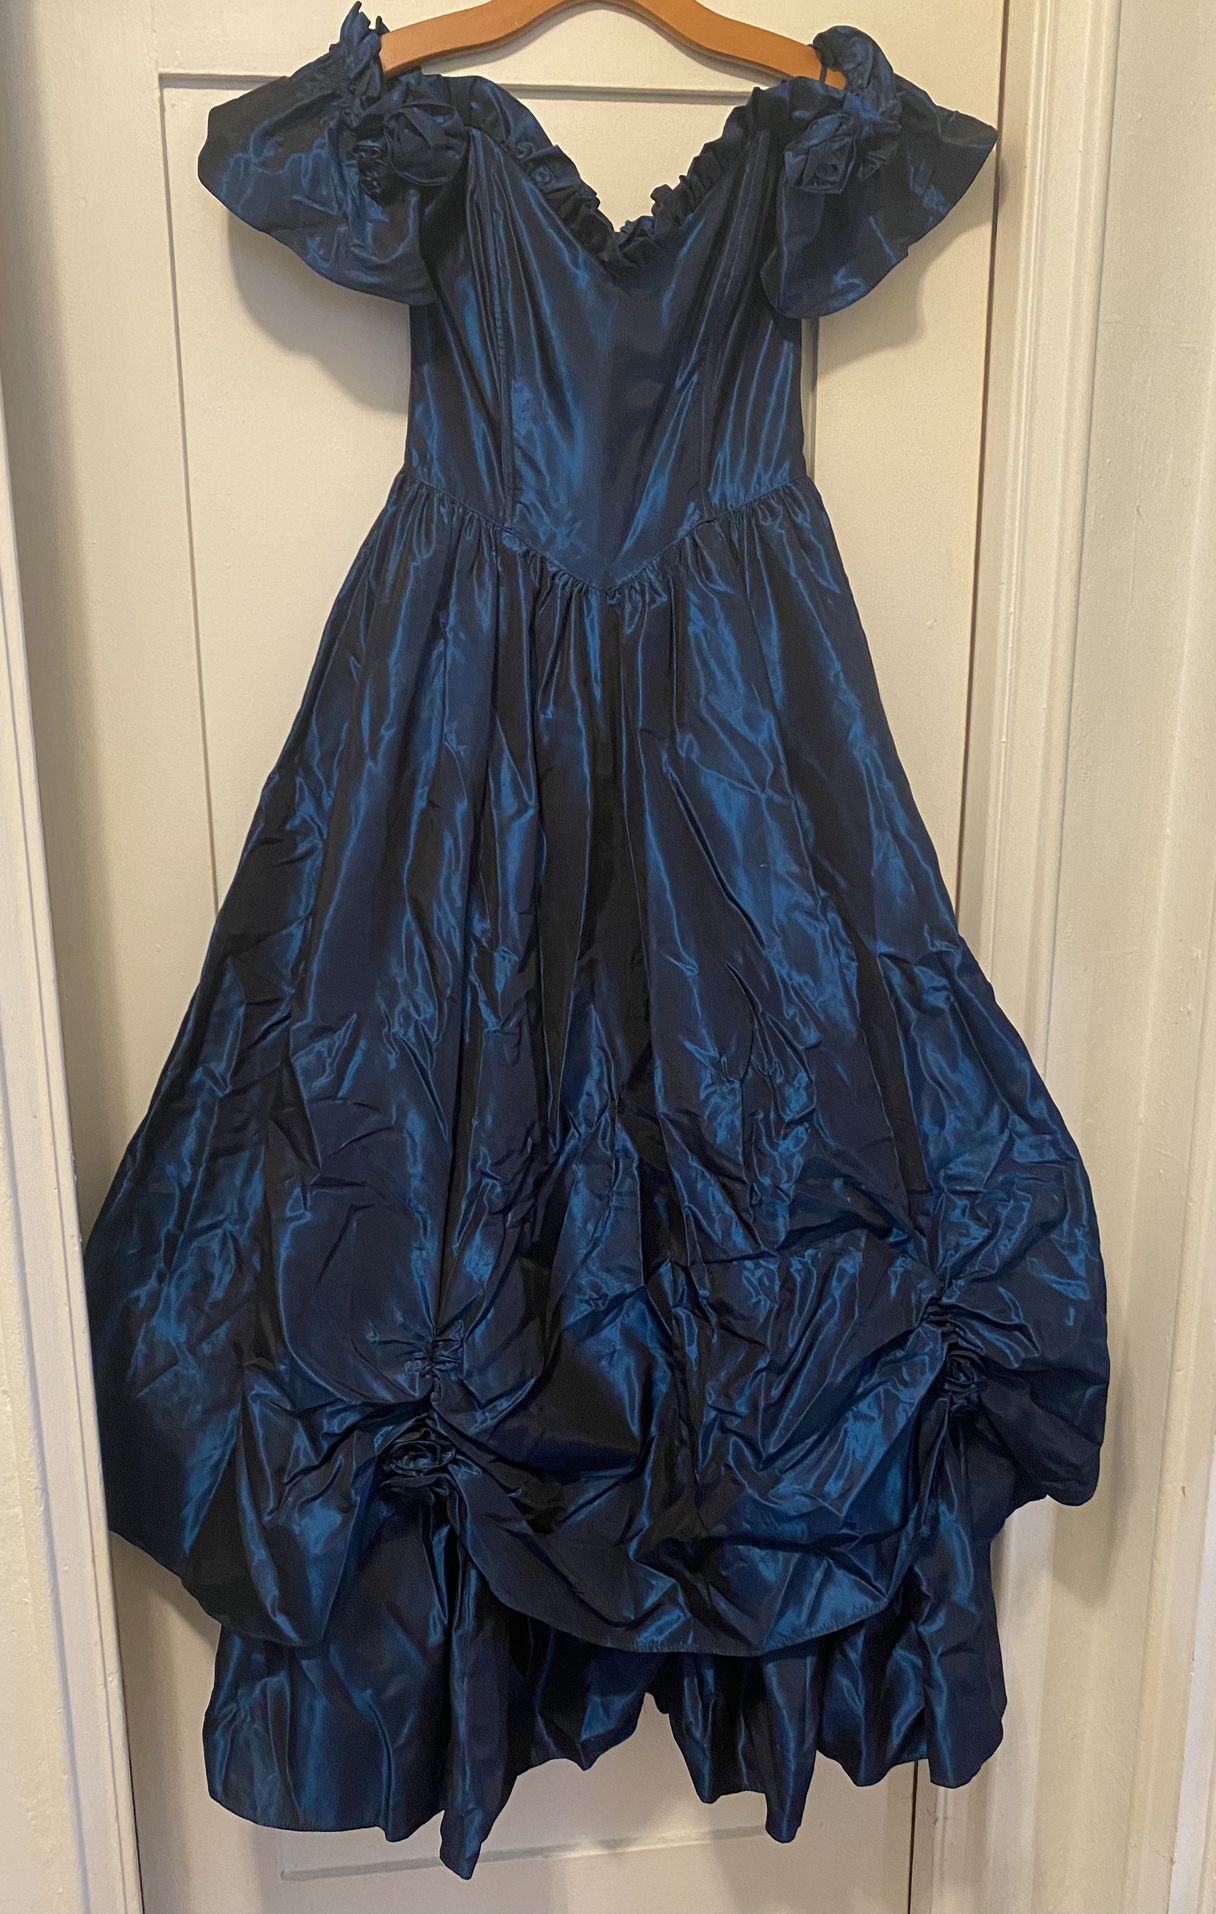 Gunne Sax Royal Blue Gown Size 9